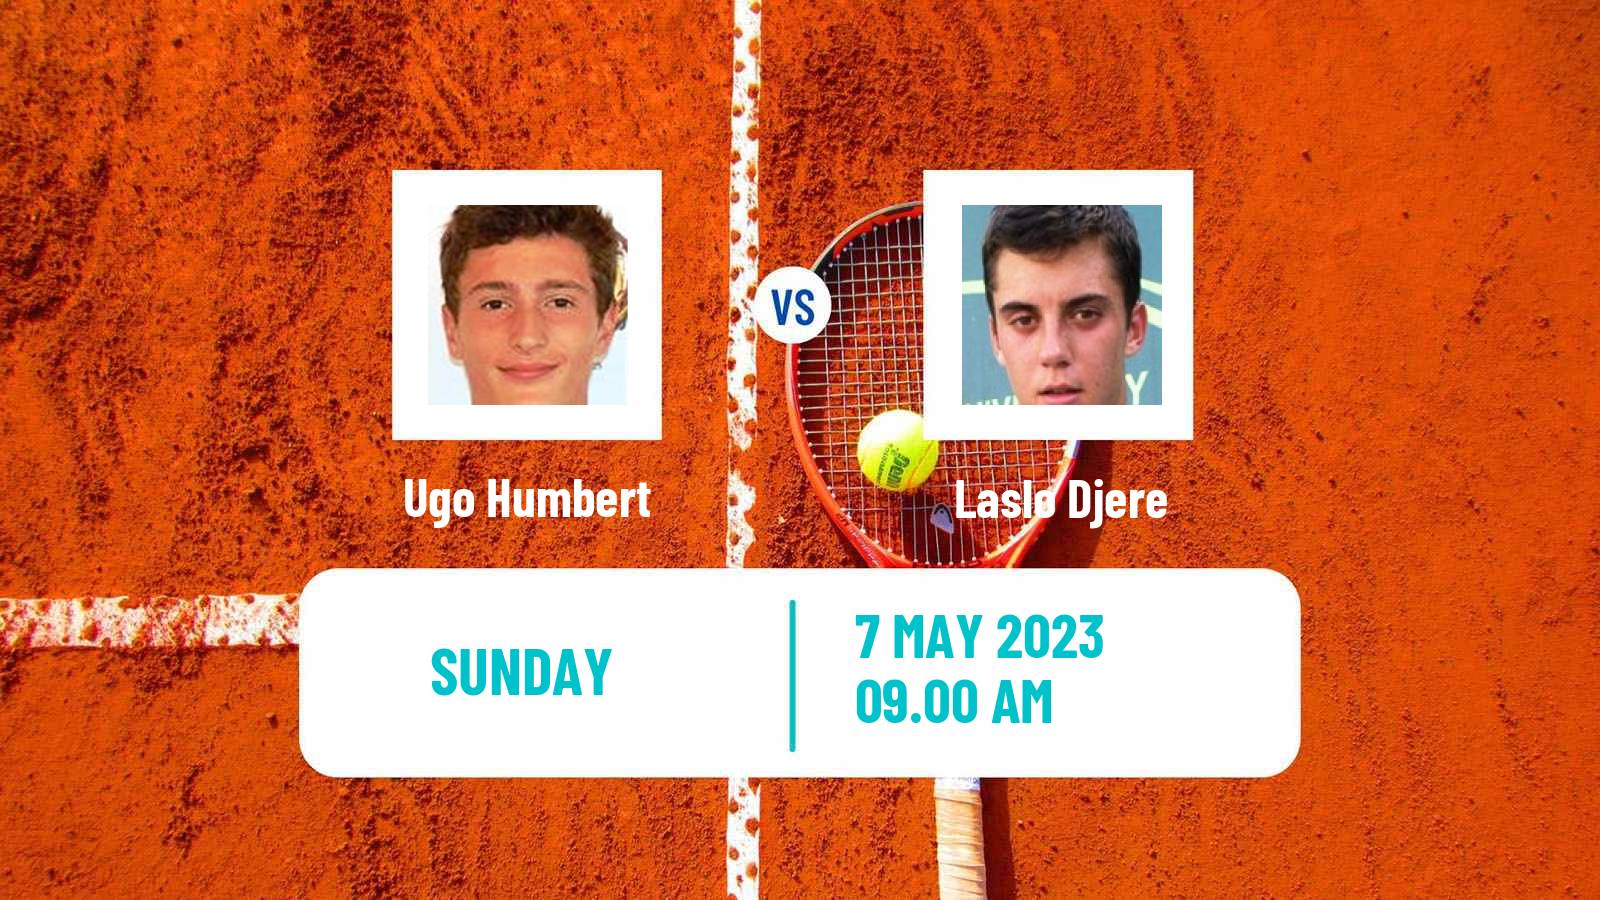 Tennis ATP Challenger Ugo Humbert - Laslo Djere